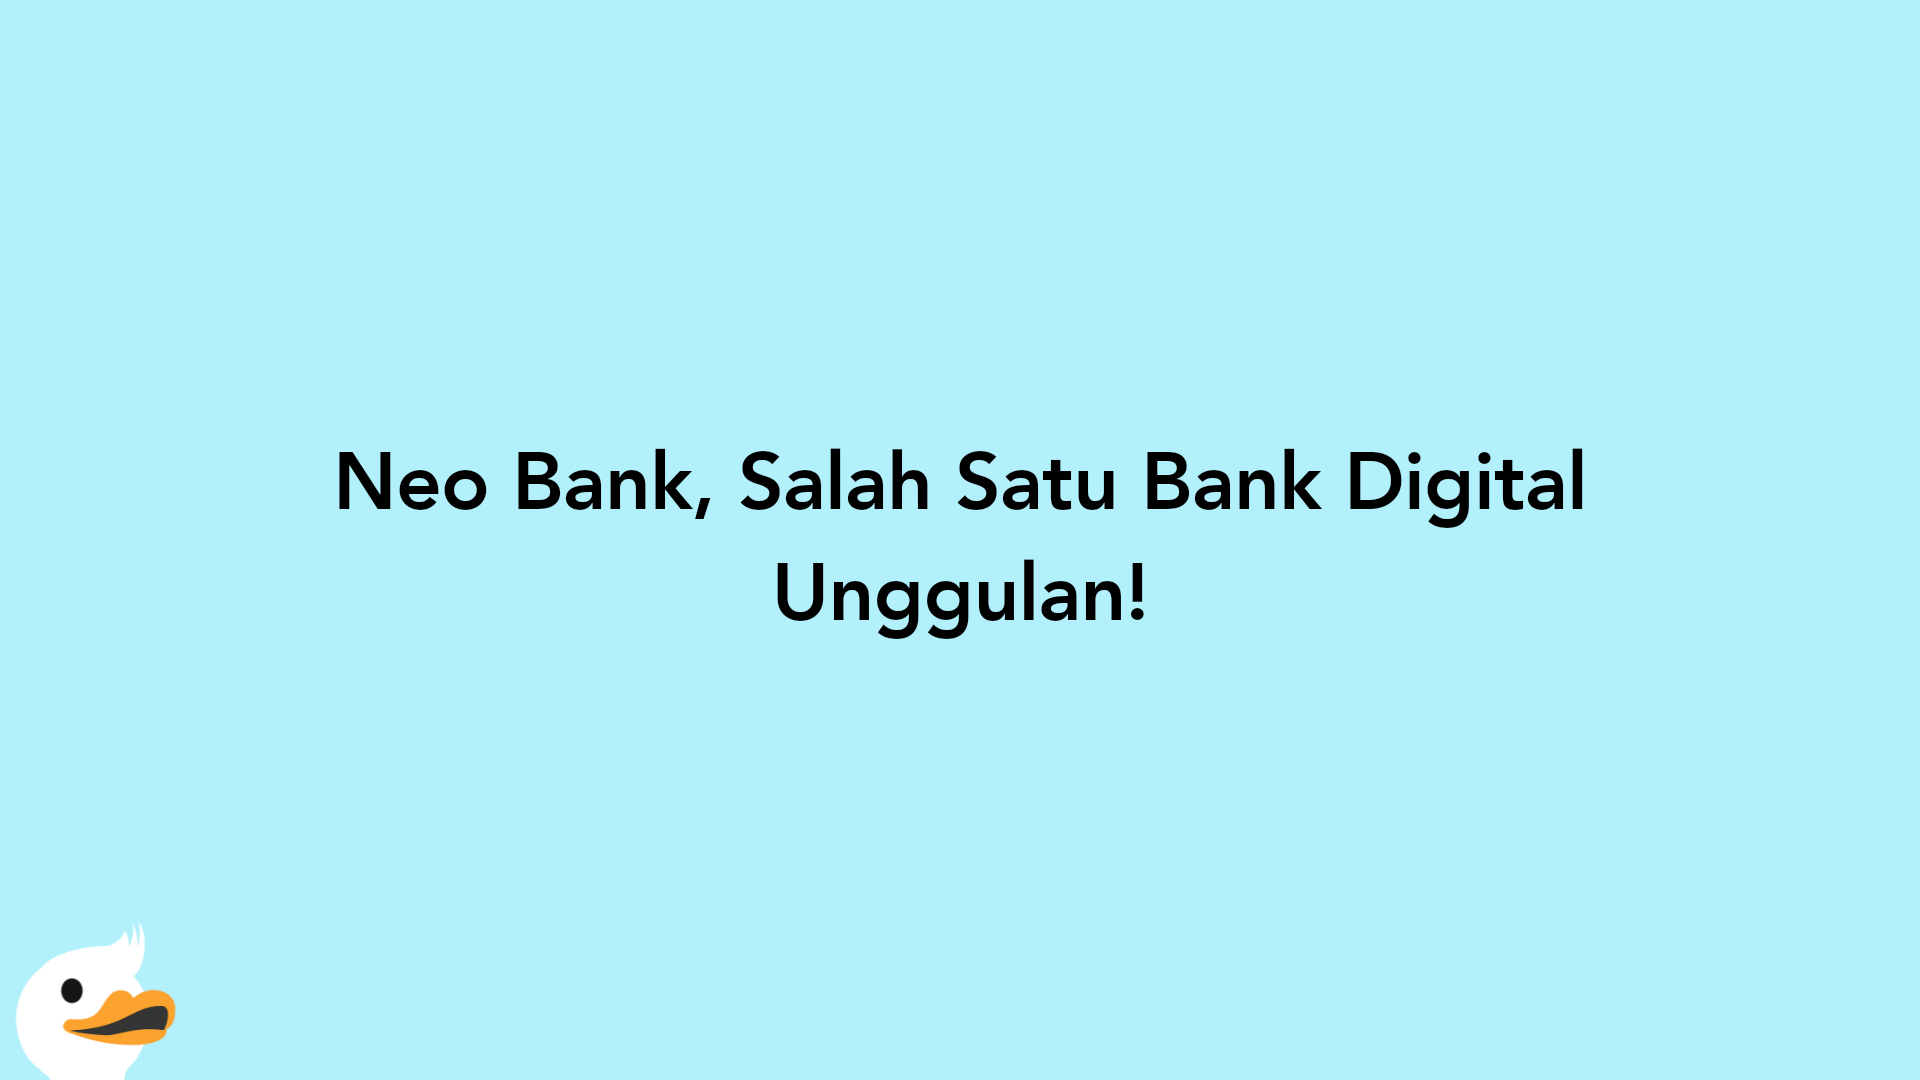 Neo Bank, Salah Satu Bank Digital Unggulan!